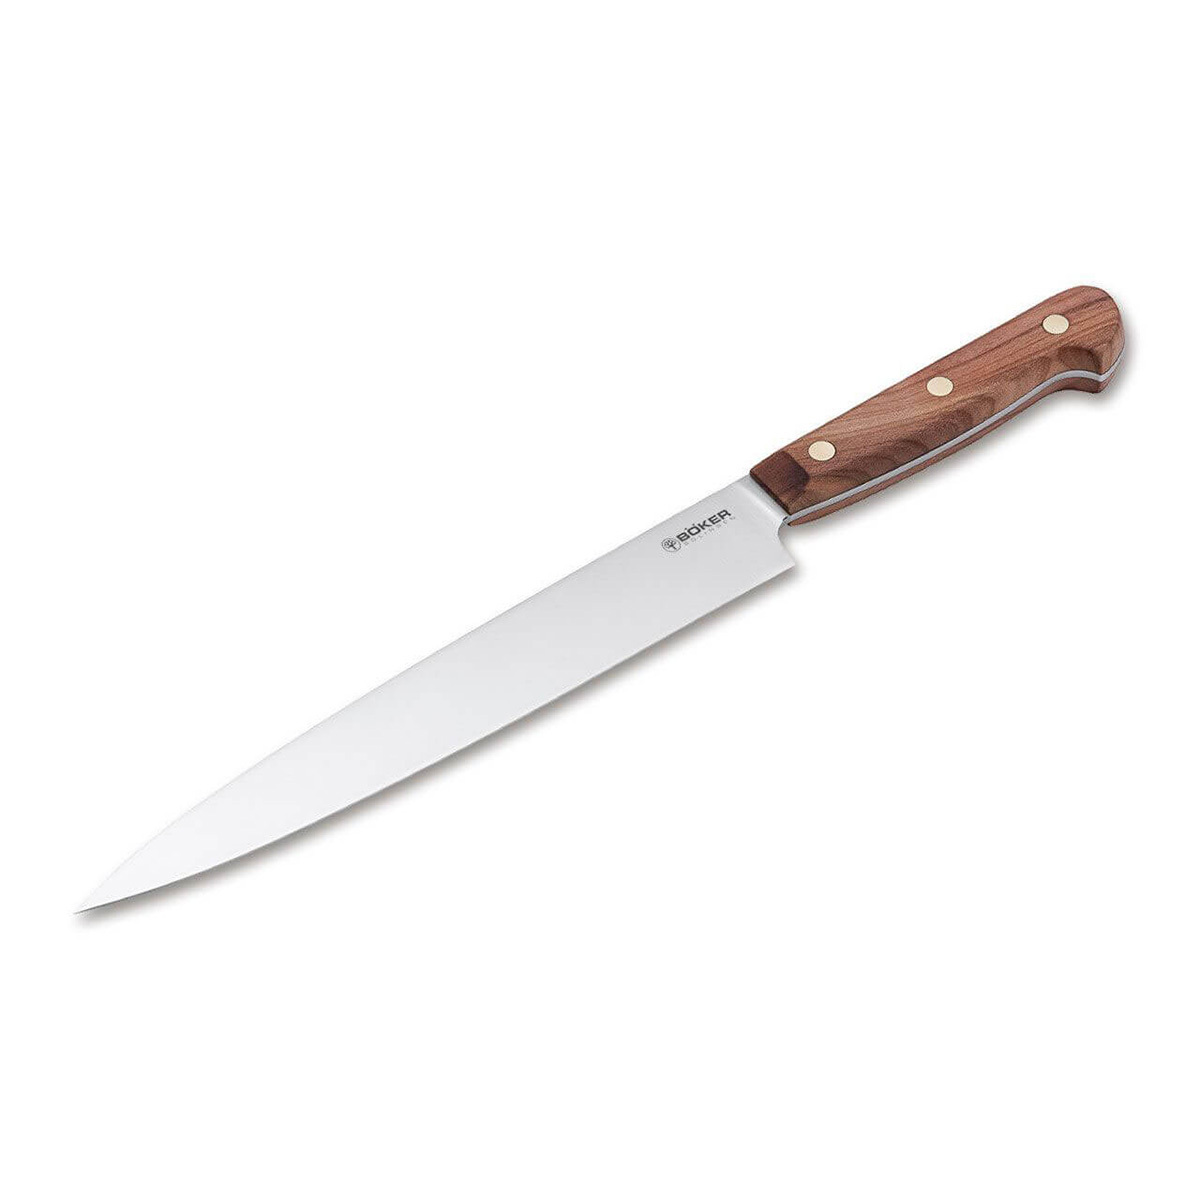 Кухонный нож Boker Cottage-Craft Carving Knife, сталь С75, рукоять дерево